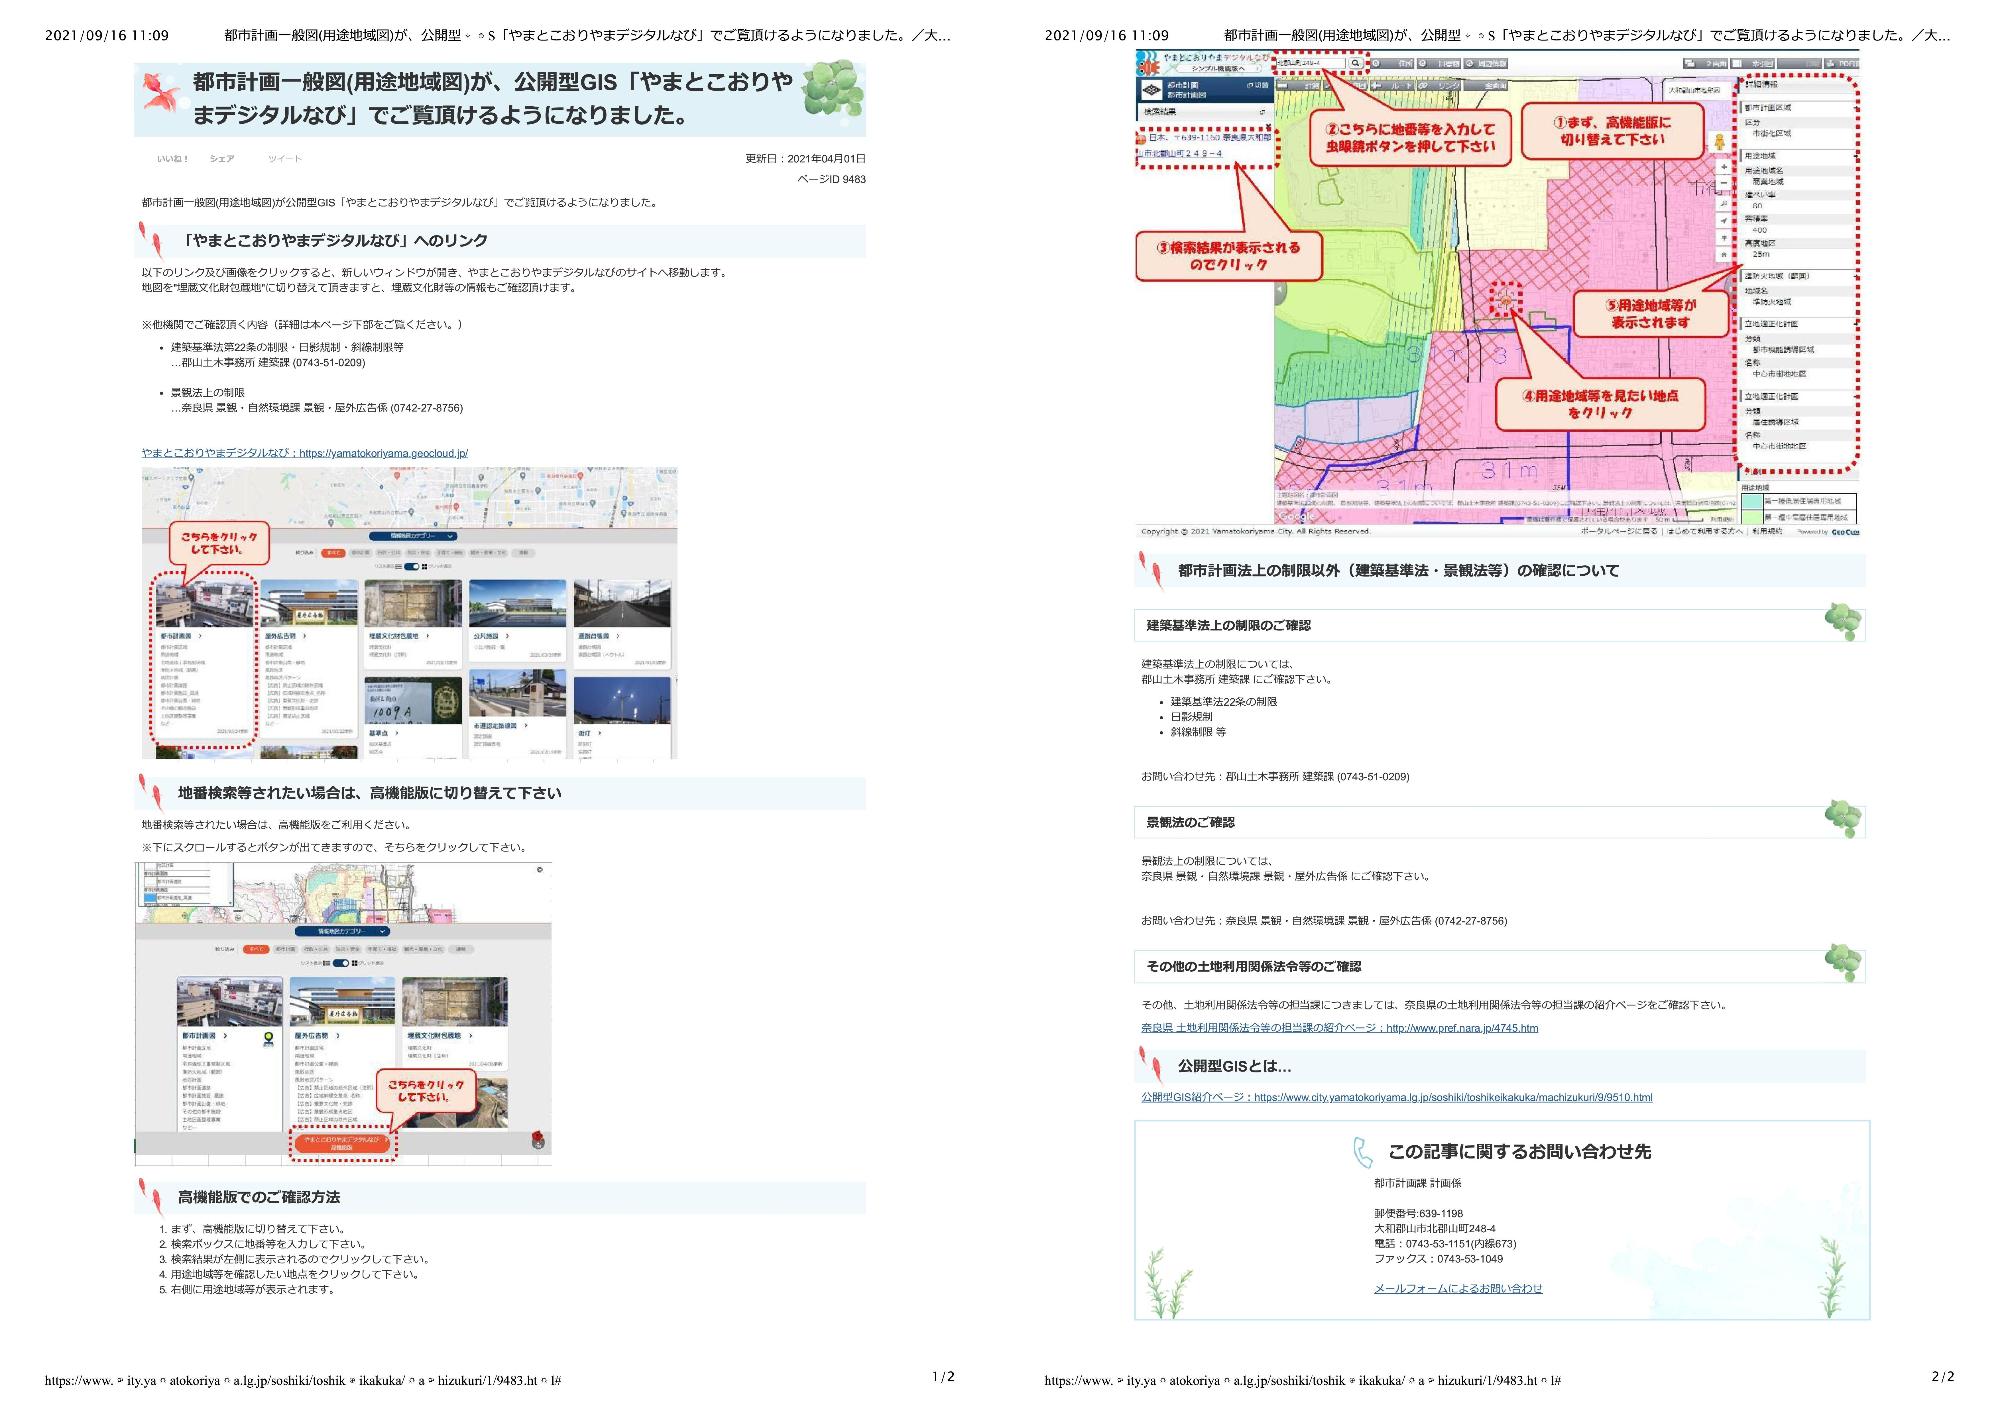 市計画一般図(用途地域図)が、公開型GIS「やまとこおりやまデジタルなび」でご覧頂けるようになりました。